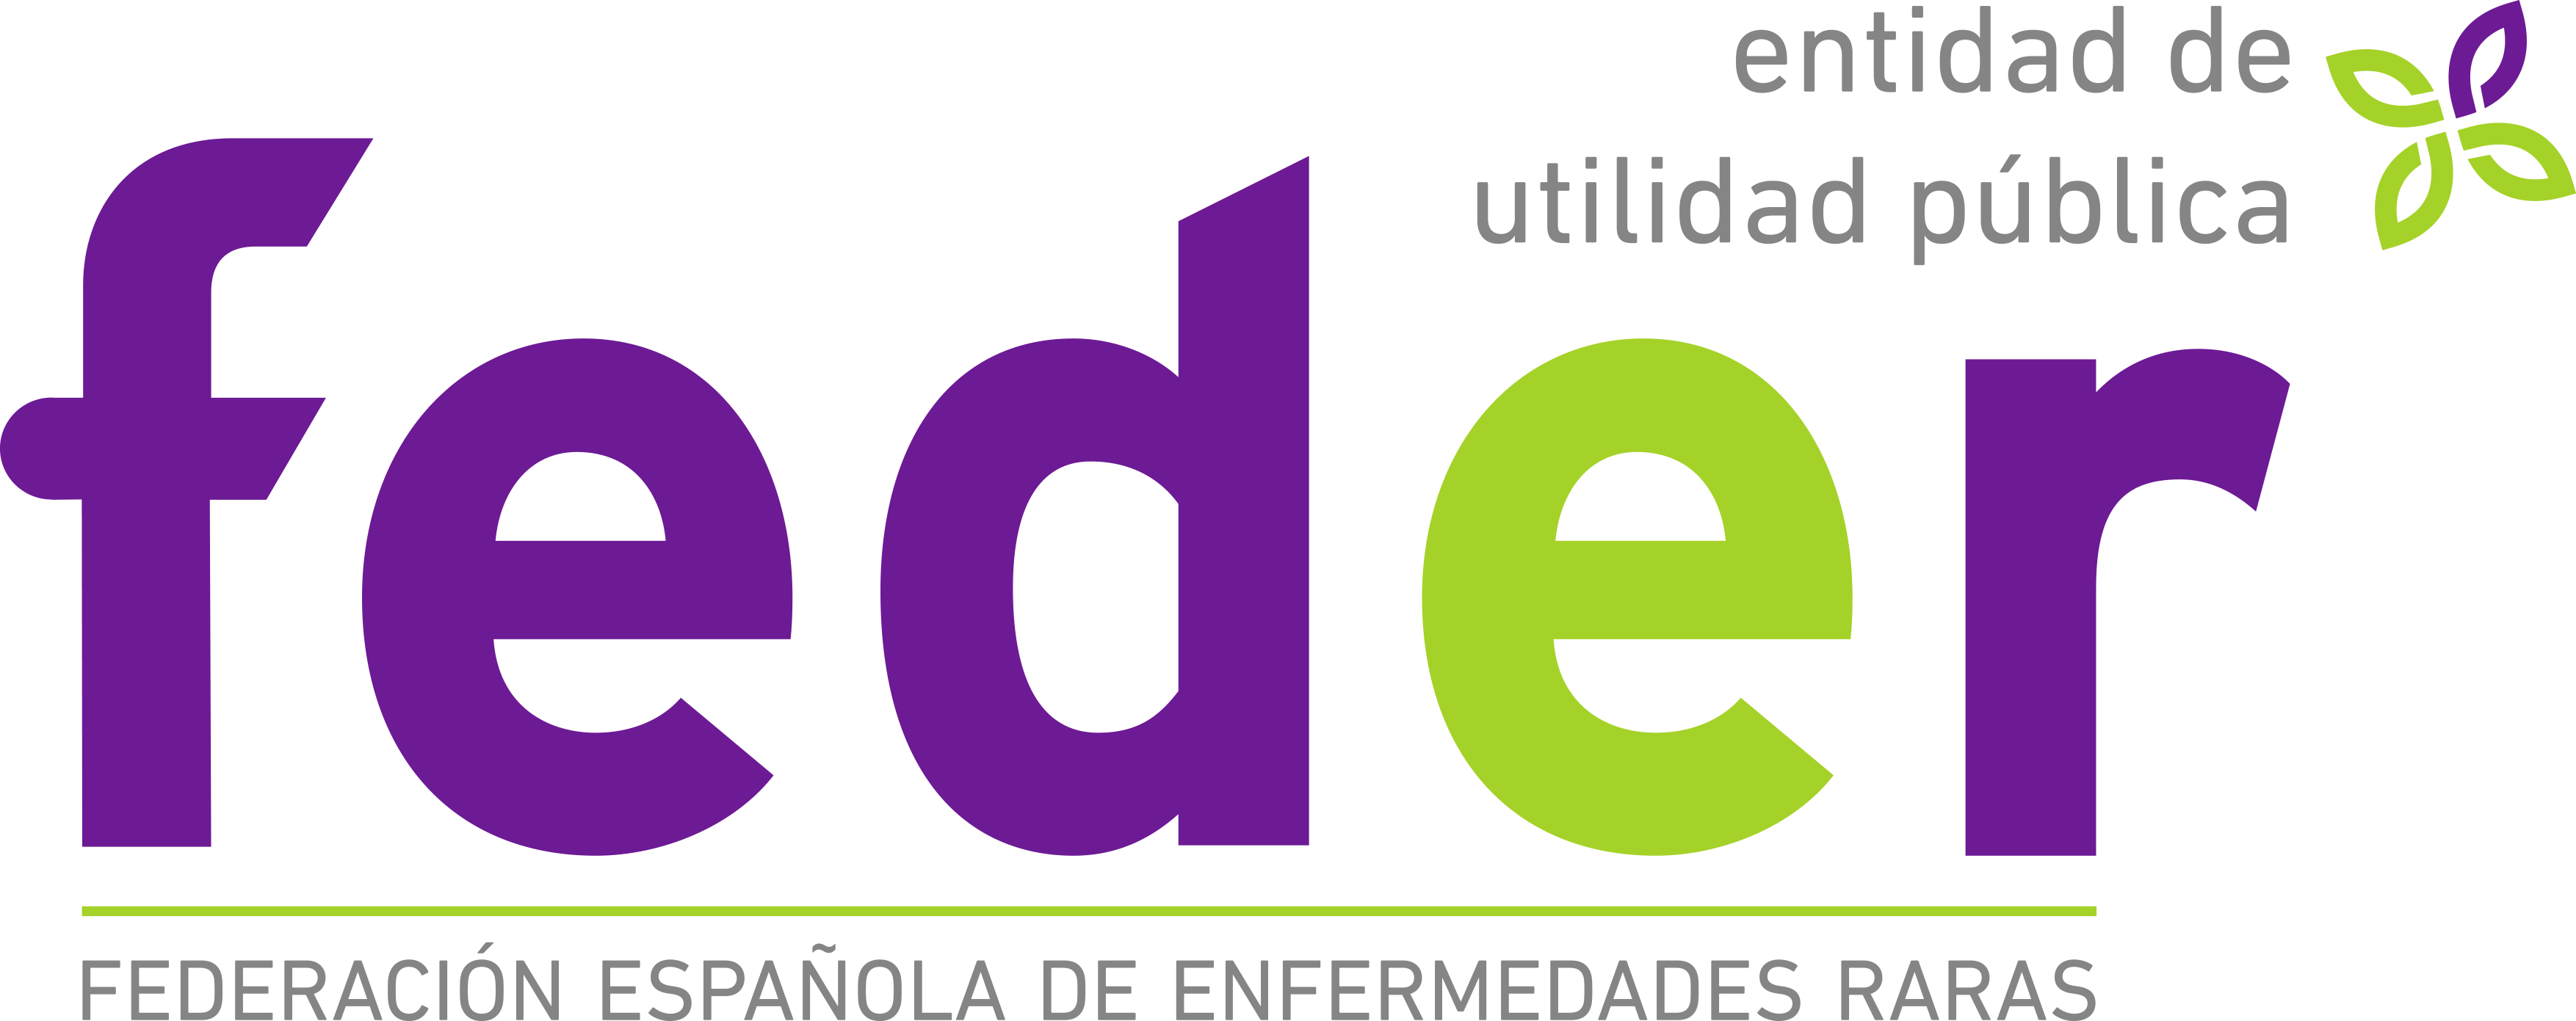 Logotipo de FEDER, Federación Española de Enfermedades Raras.